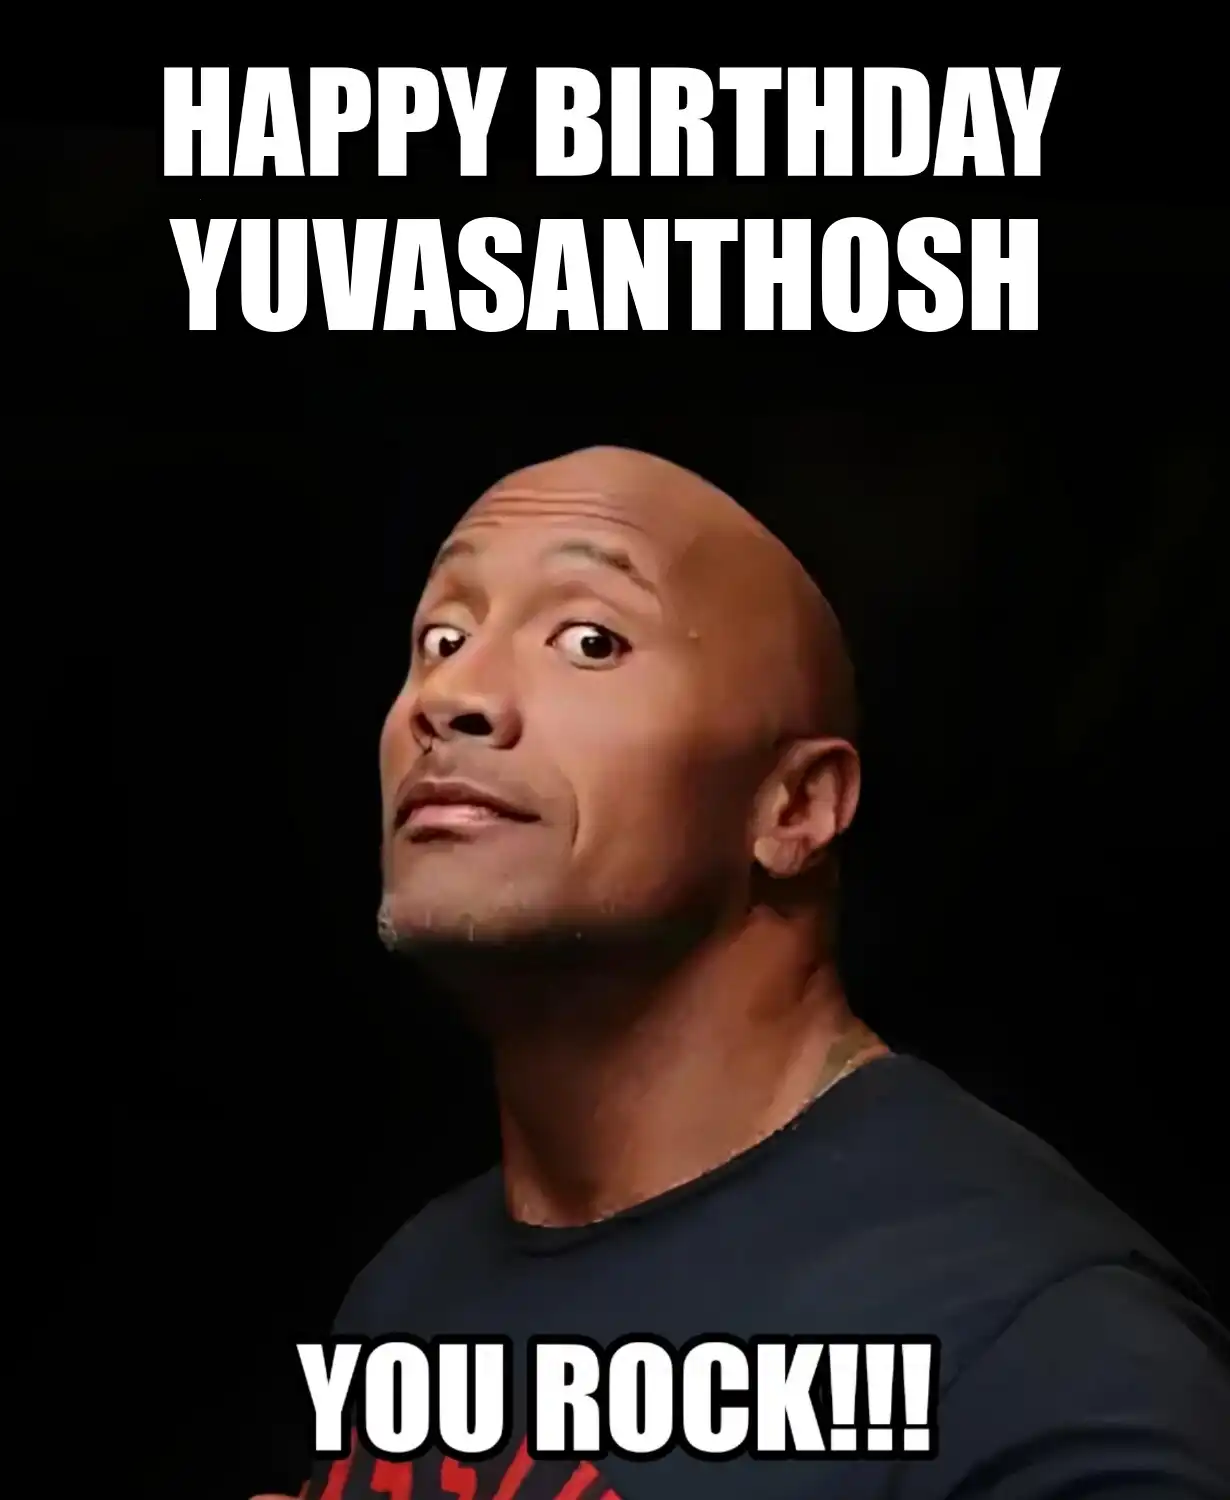 Happy Birthday Yuvasanthosh You Rock Meme